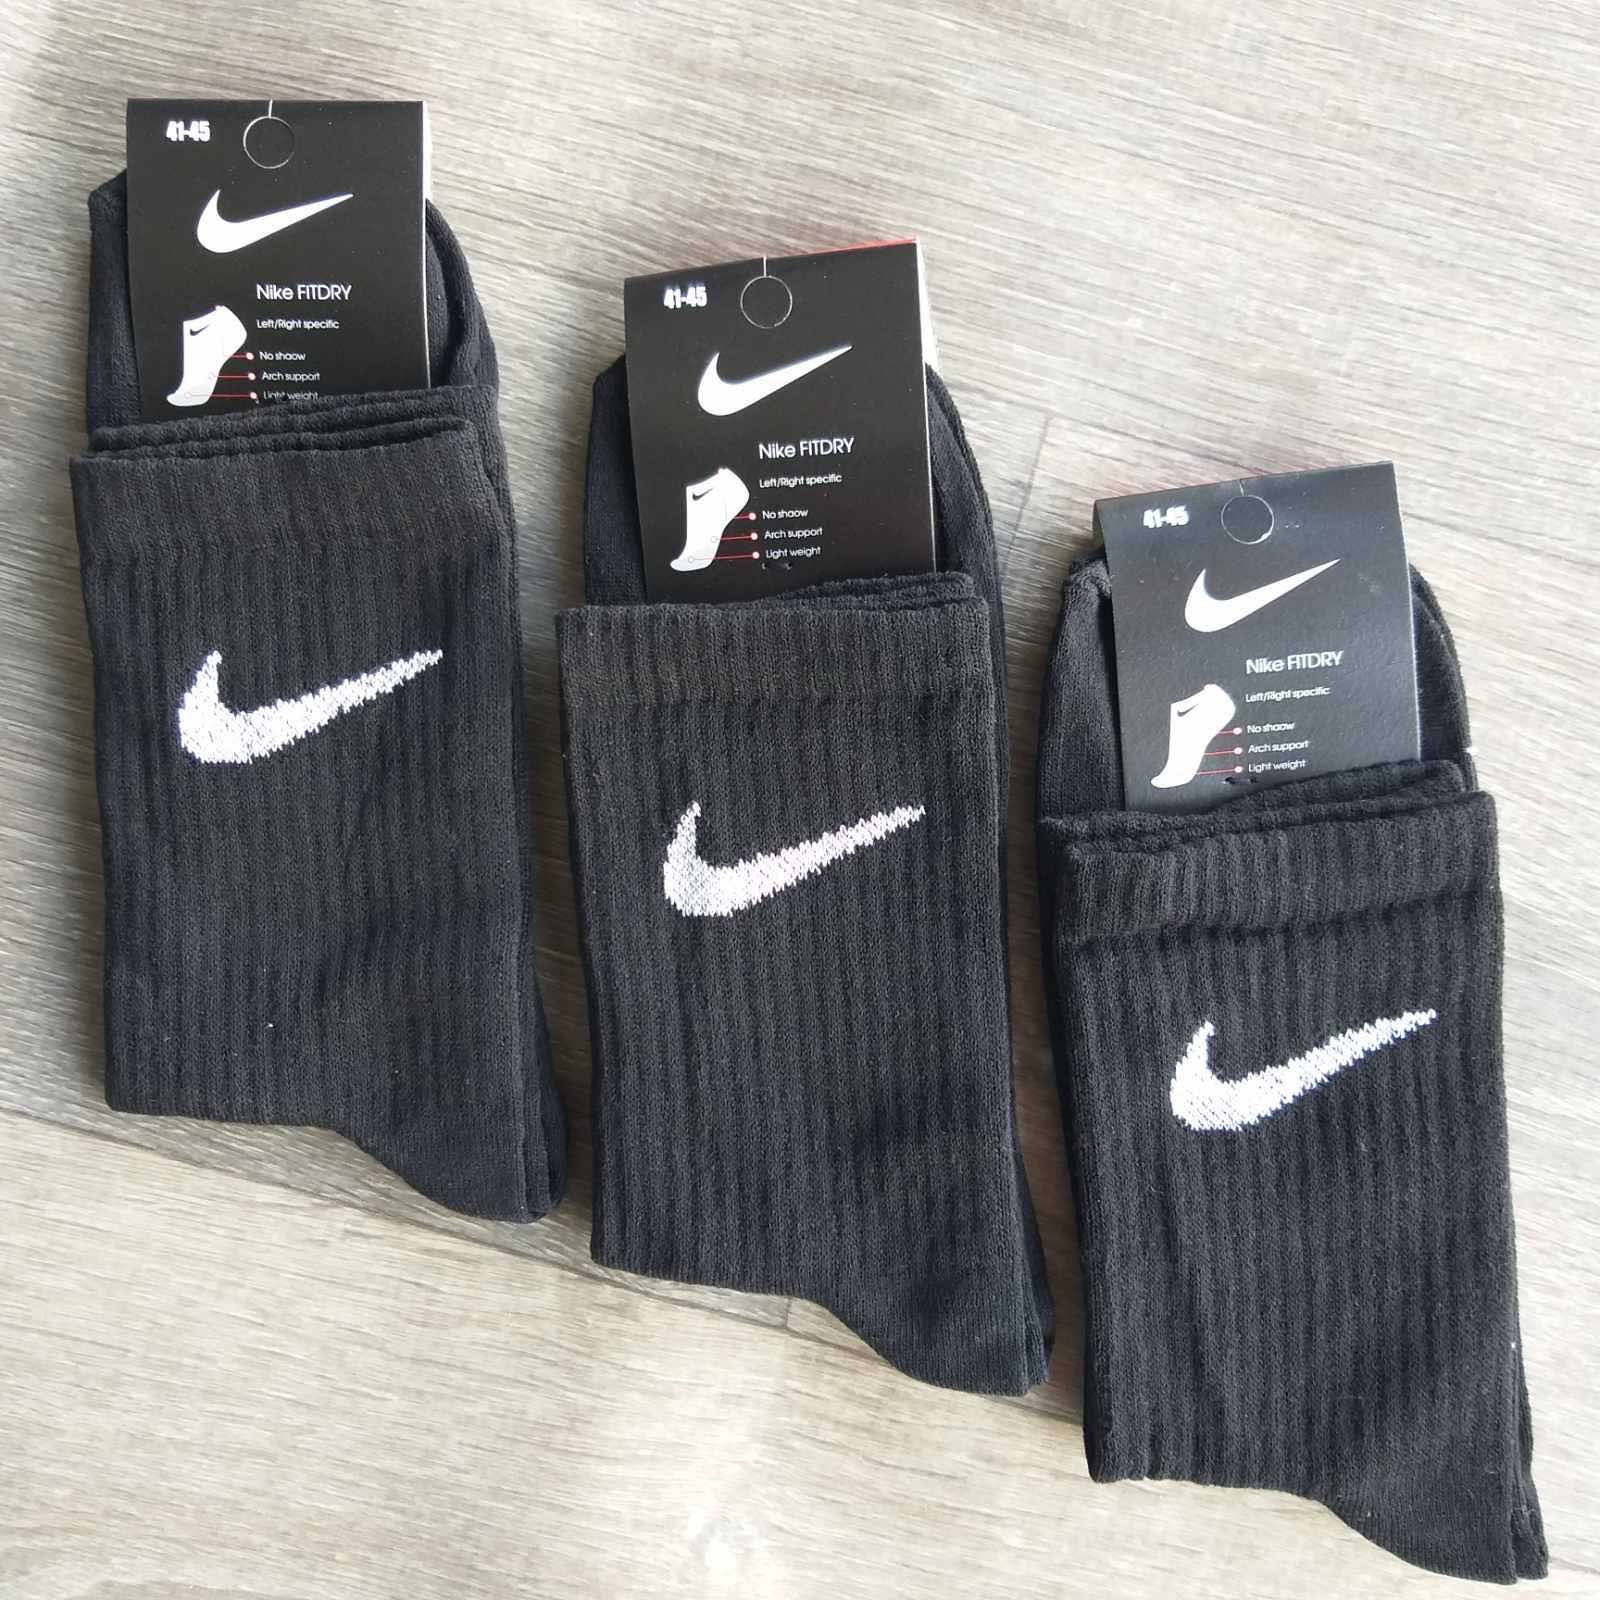 Спортивні носки Nike, Adidas: 250грн за 12пар. Високі, білі. Оптом!